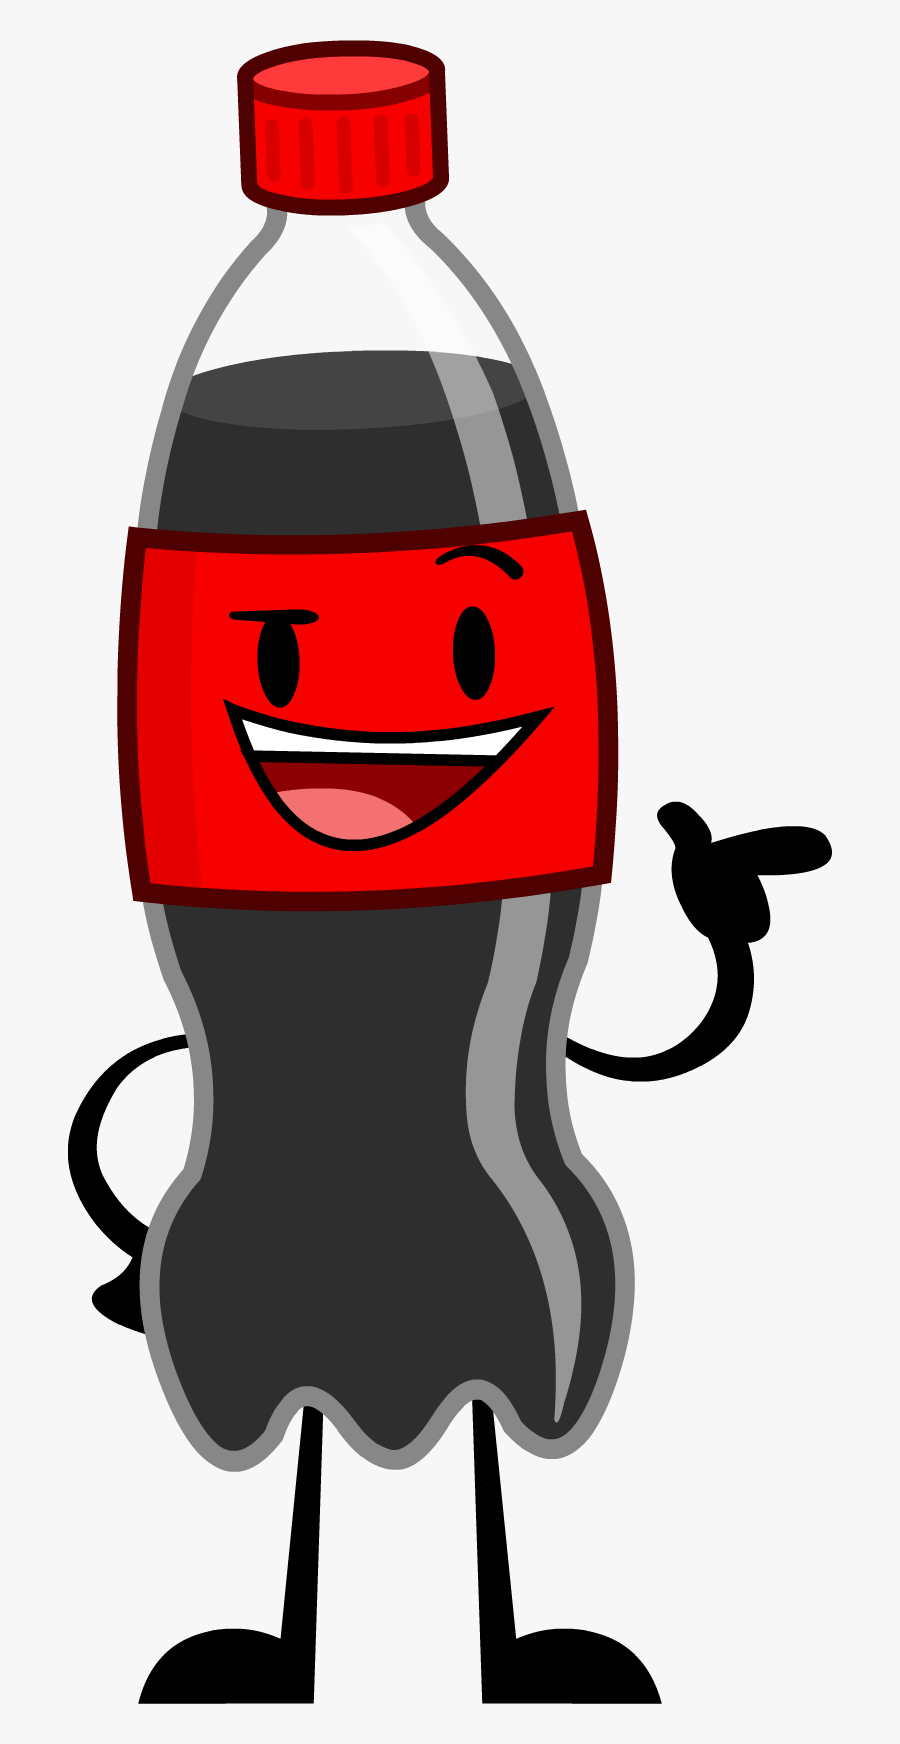 Transparent Coke Clipart - Coke Bottle Cartoon Plastic, Transparent Clipart